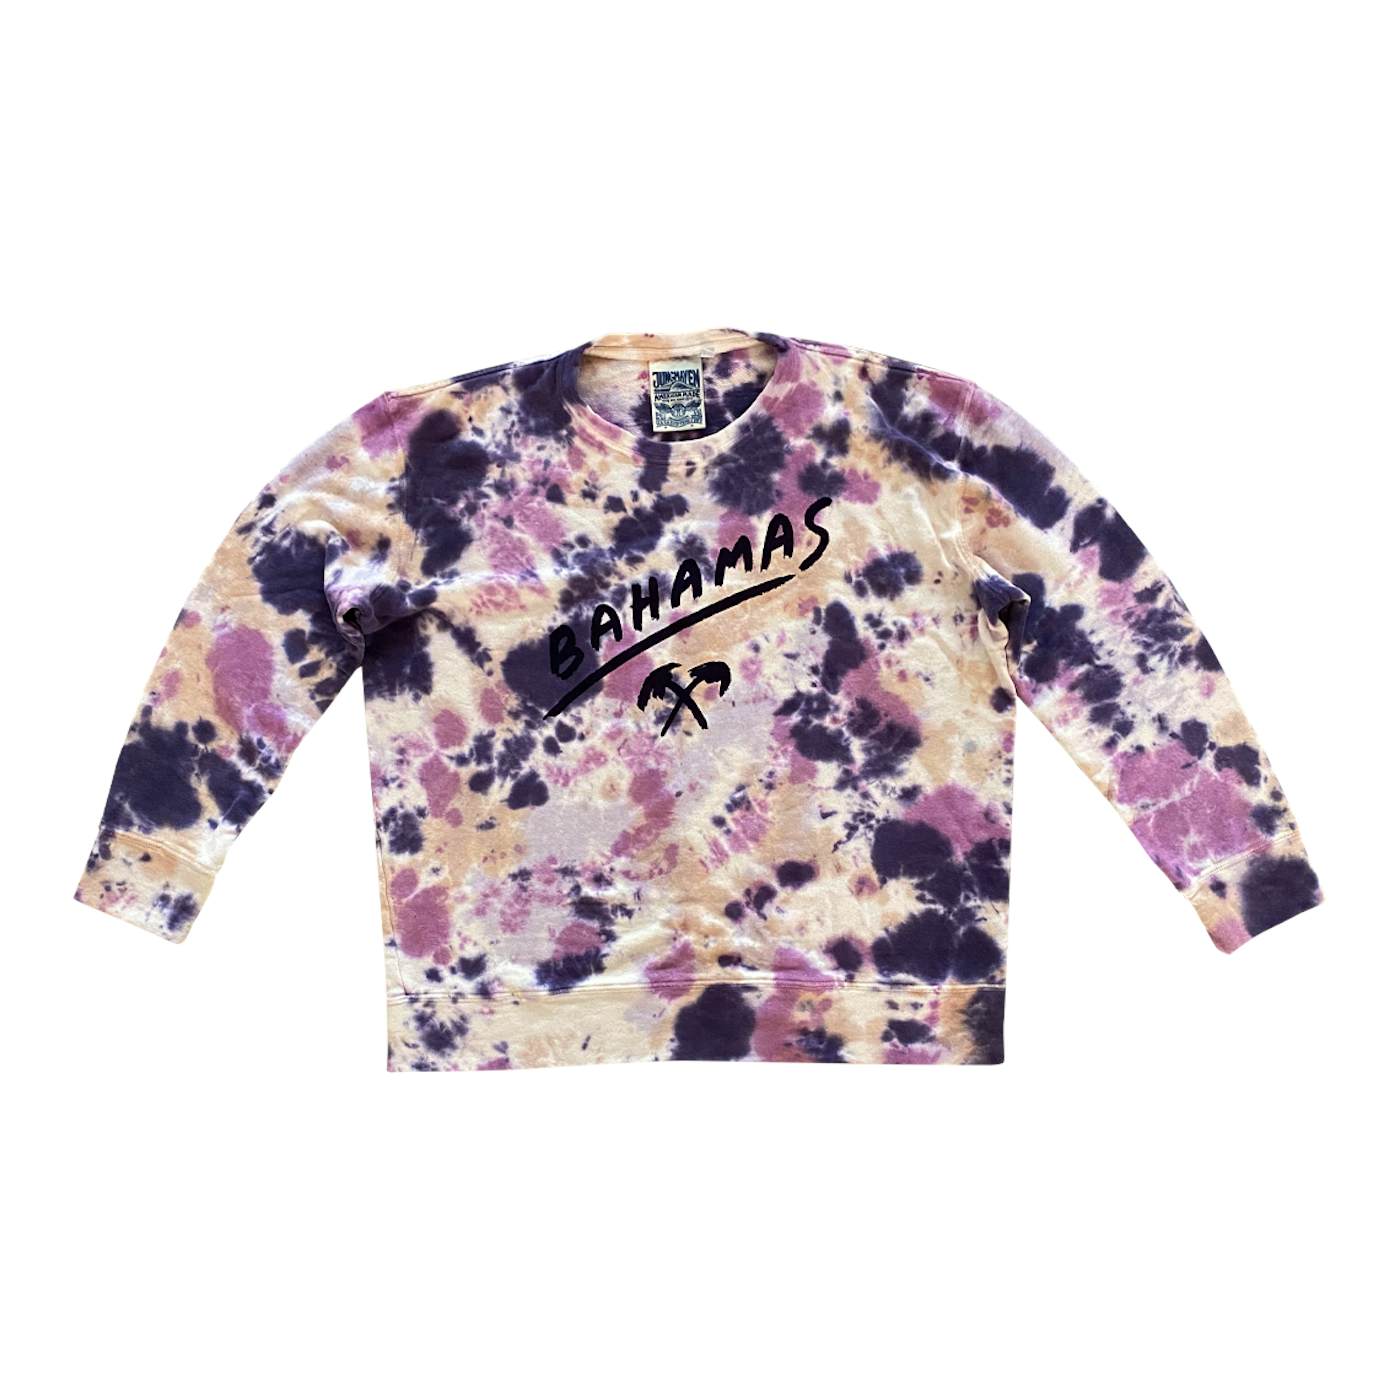 BAHAMAS X JUNGMAVEN Adult Cosmic Purple Tahoe Sweatshirt